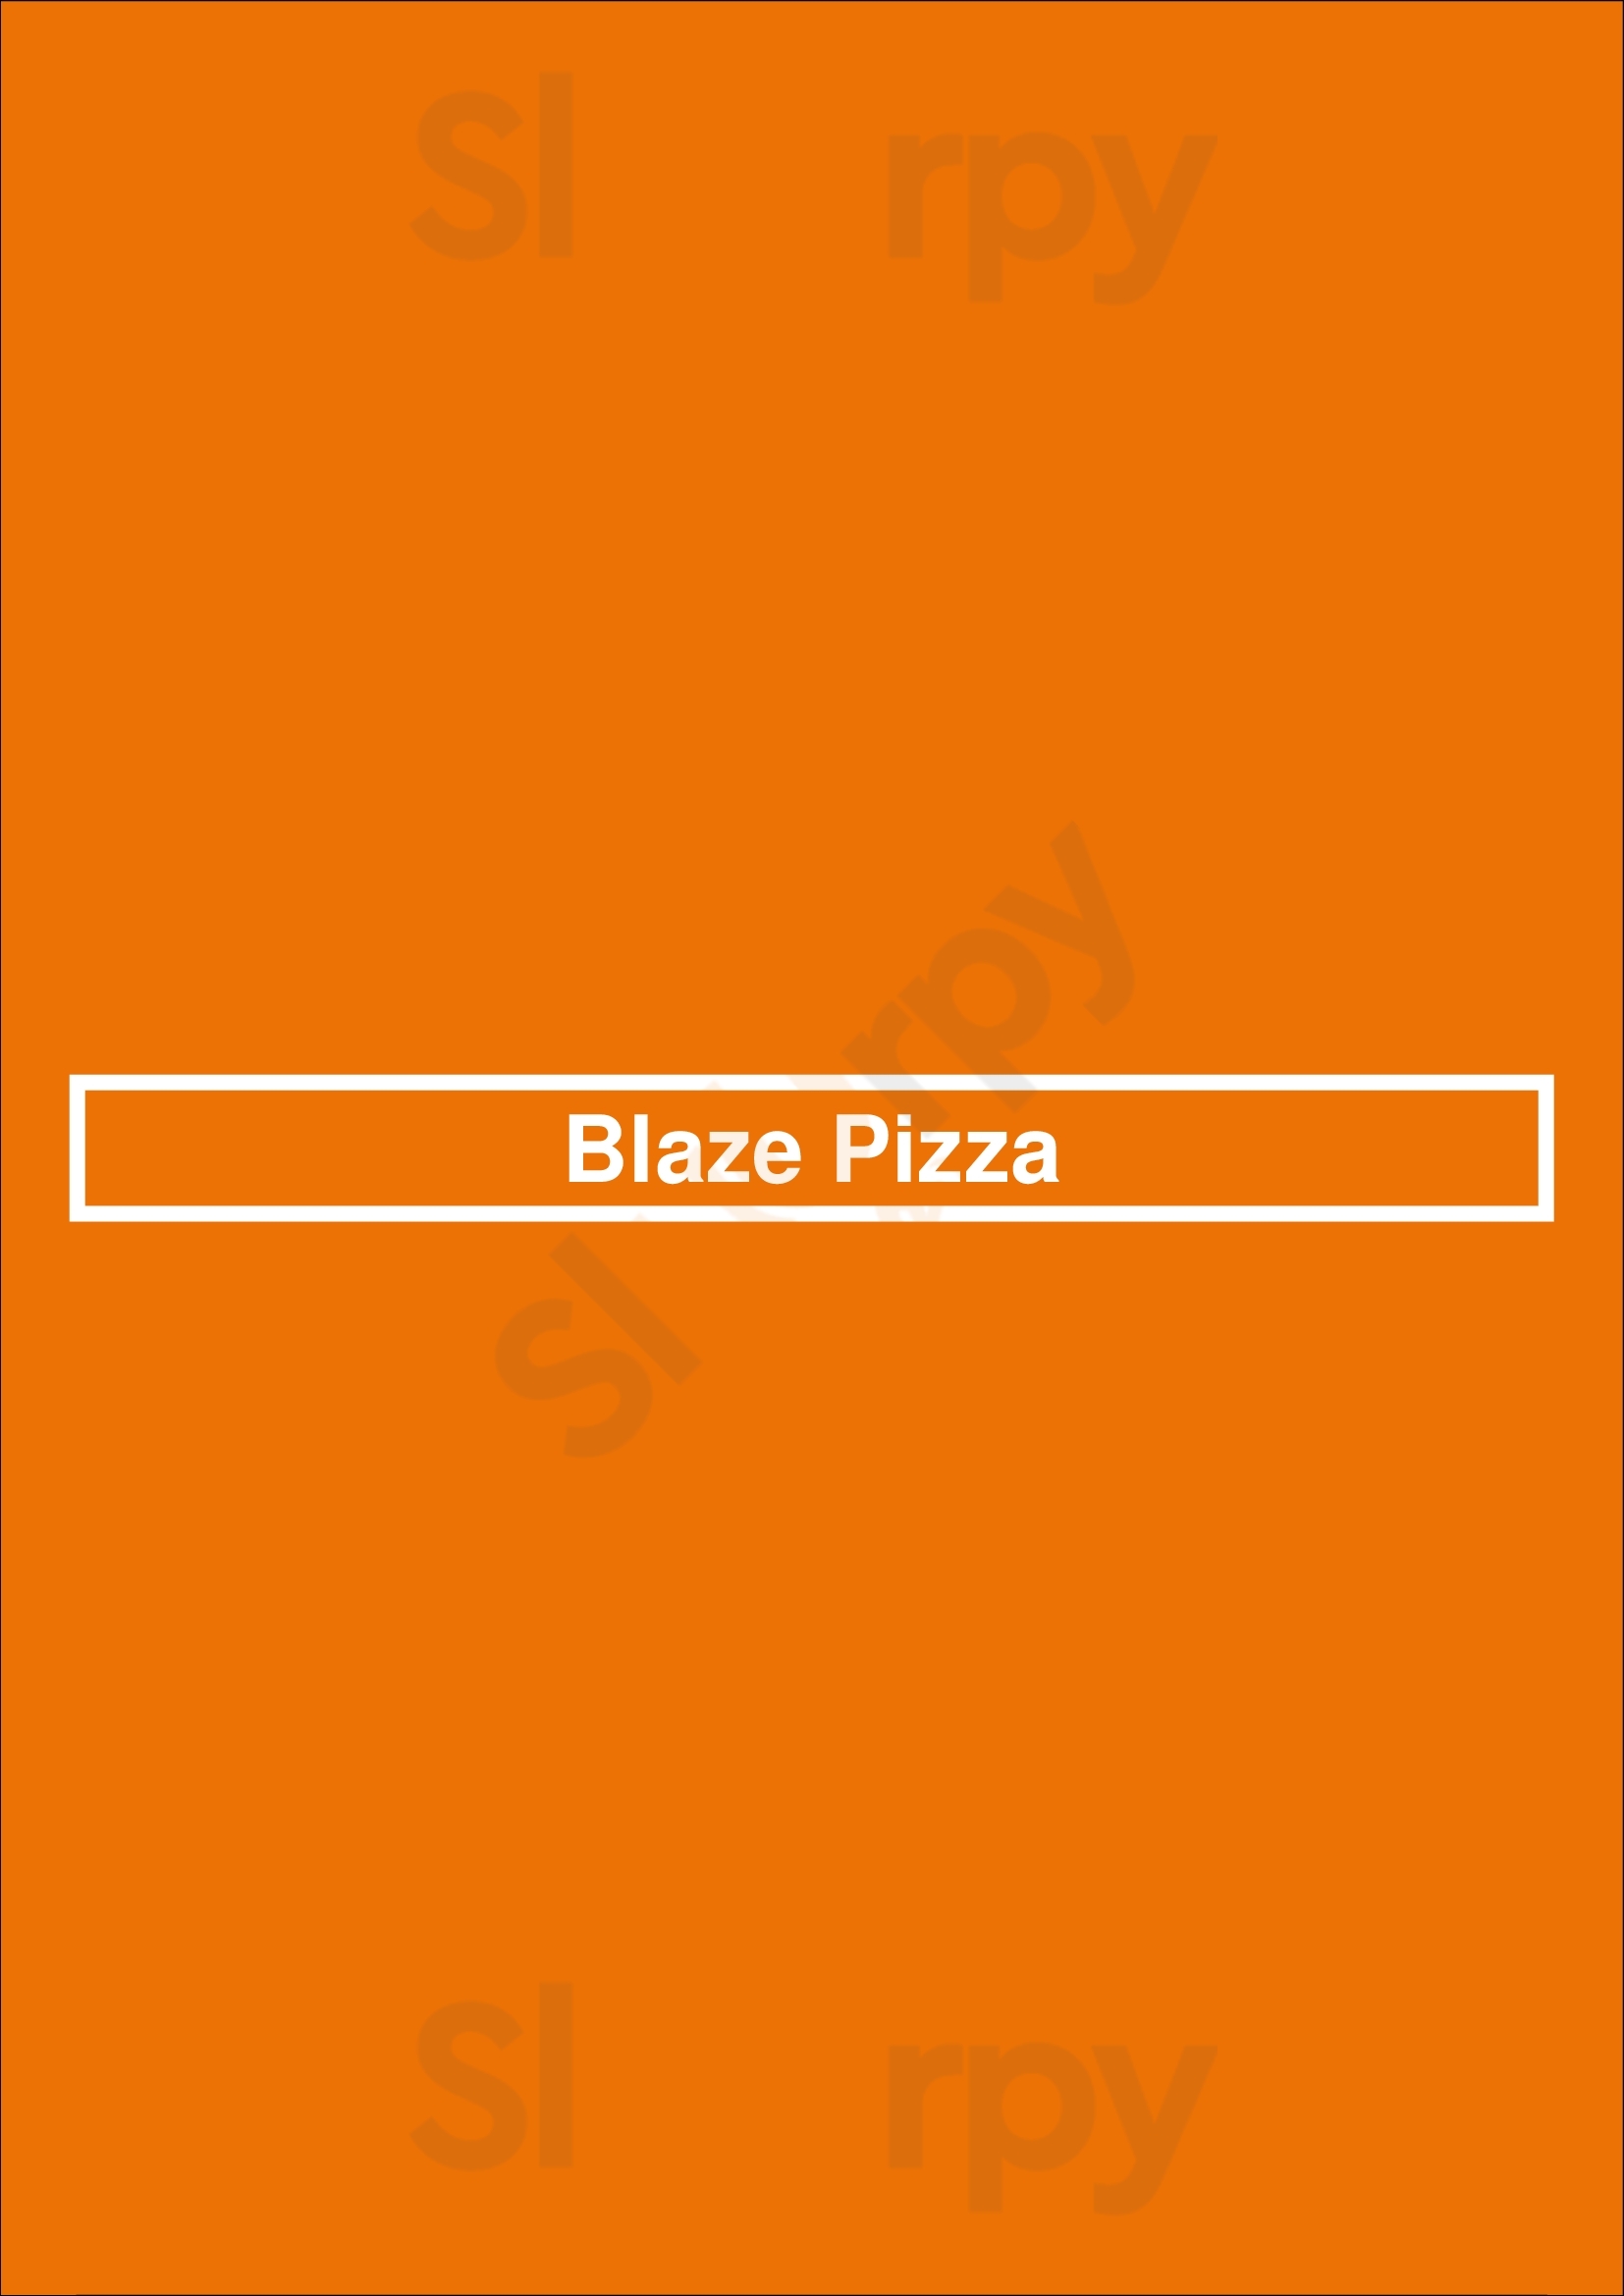 Blaze Pizza Portage Menu - 1